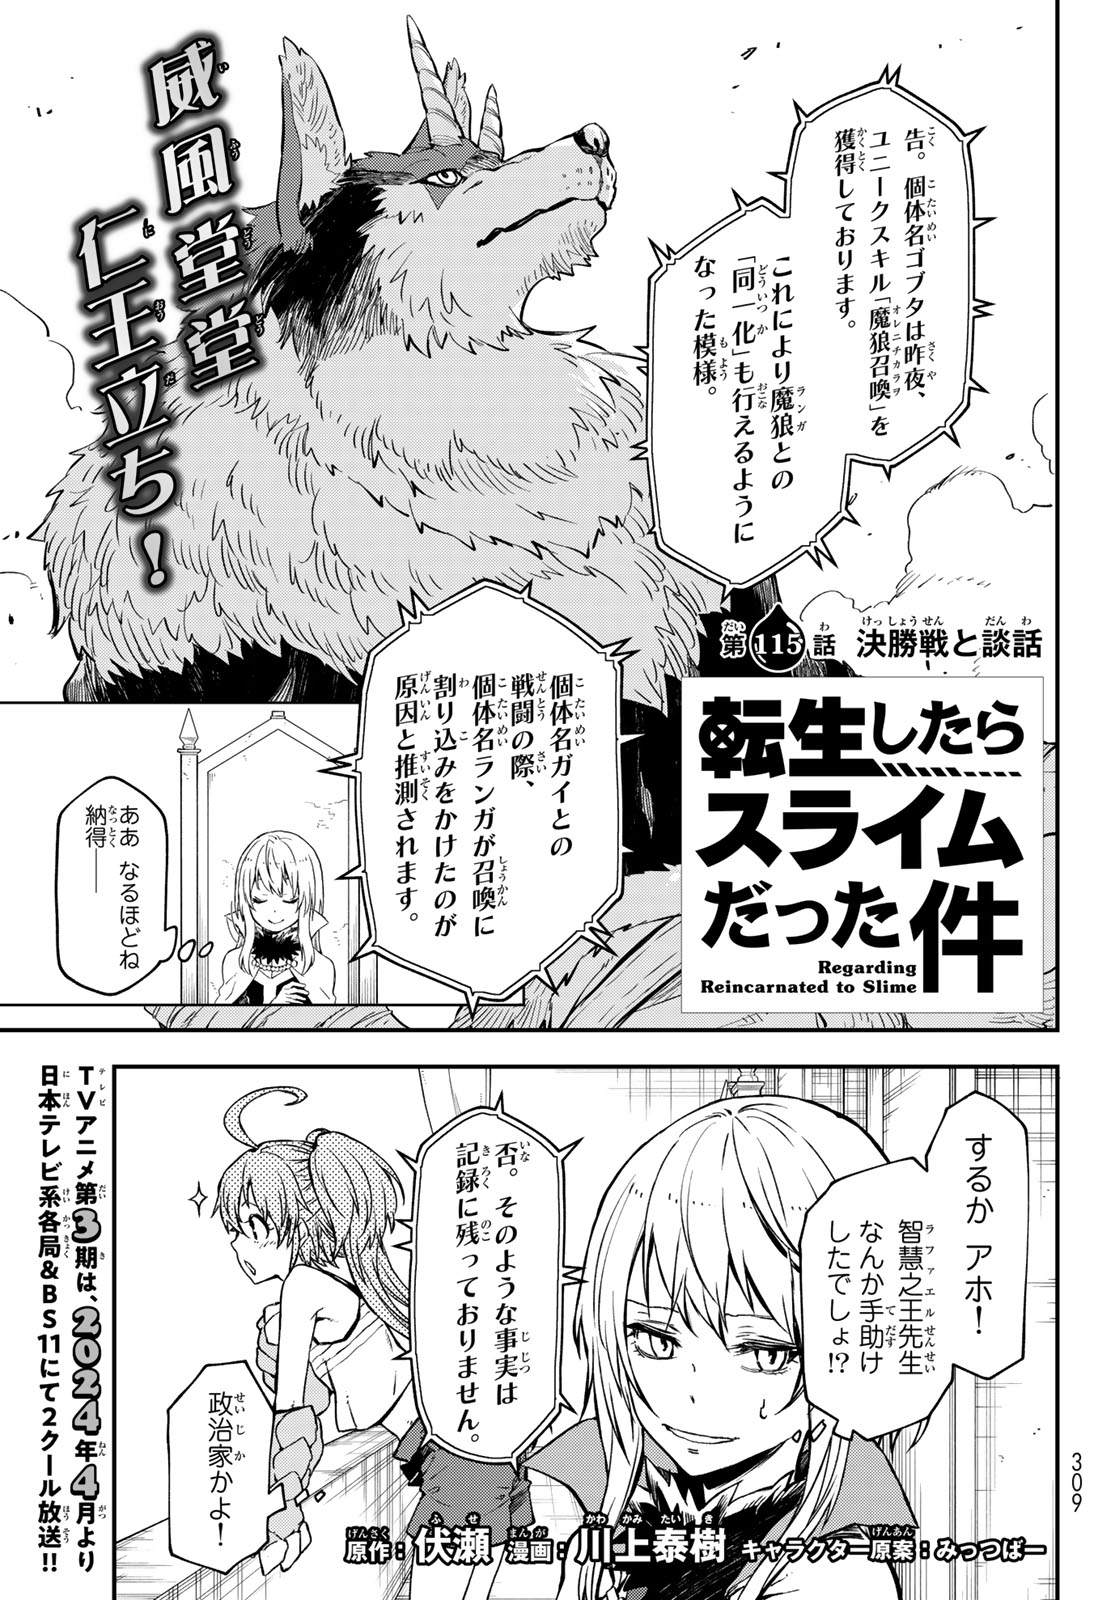 Tensei Shitara Slime Datta Ken - Chapter 115 - Page 1